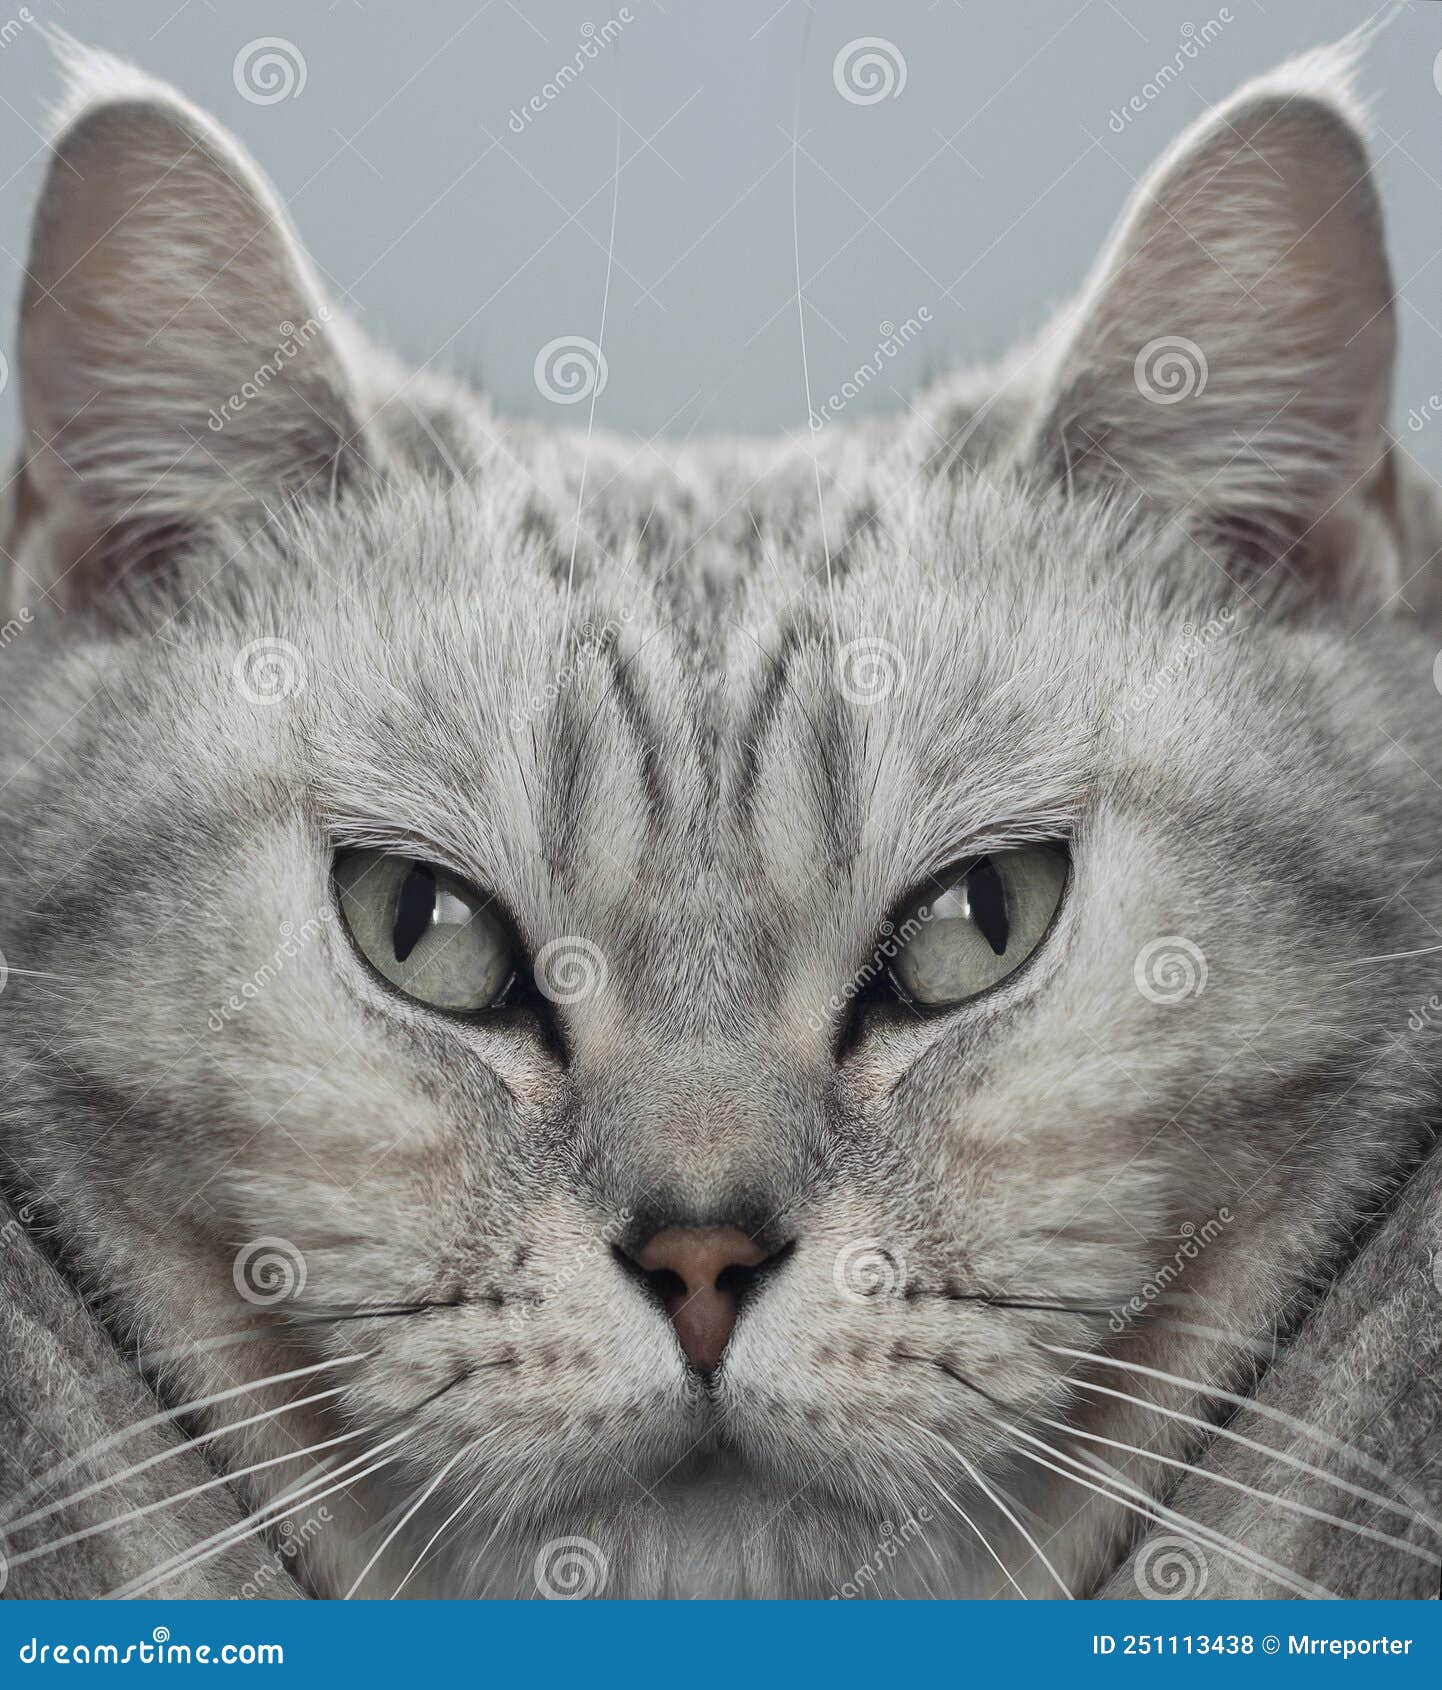 digital altered portrait of british cat